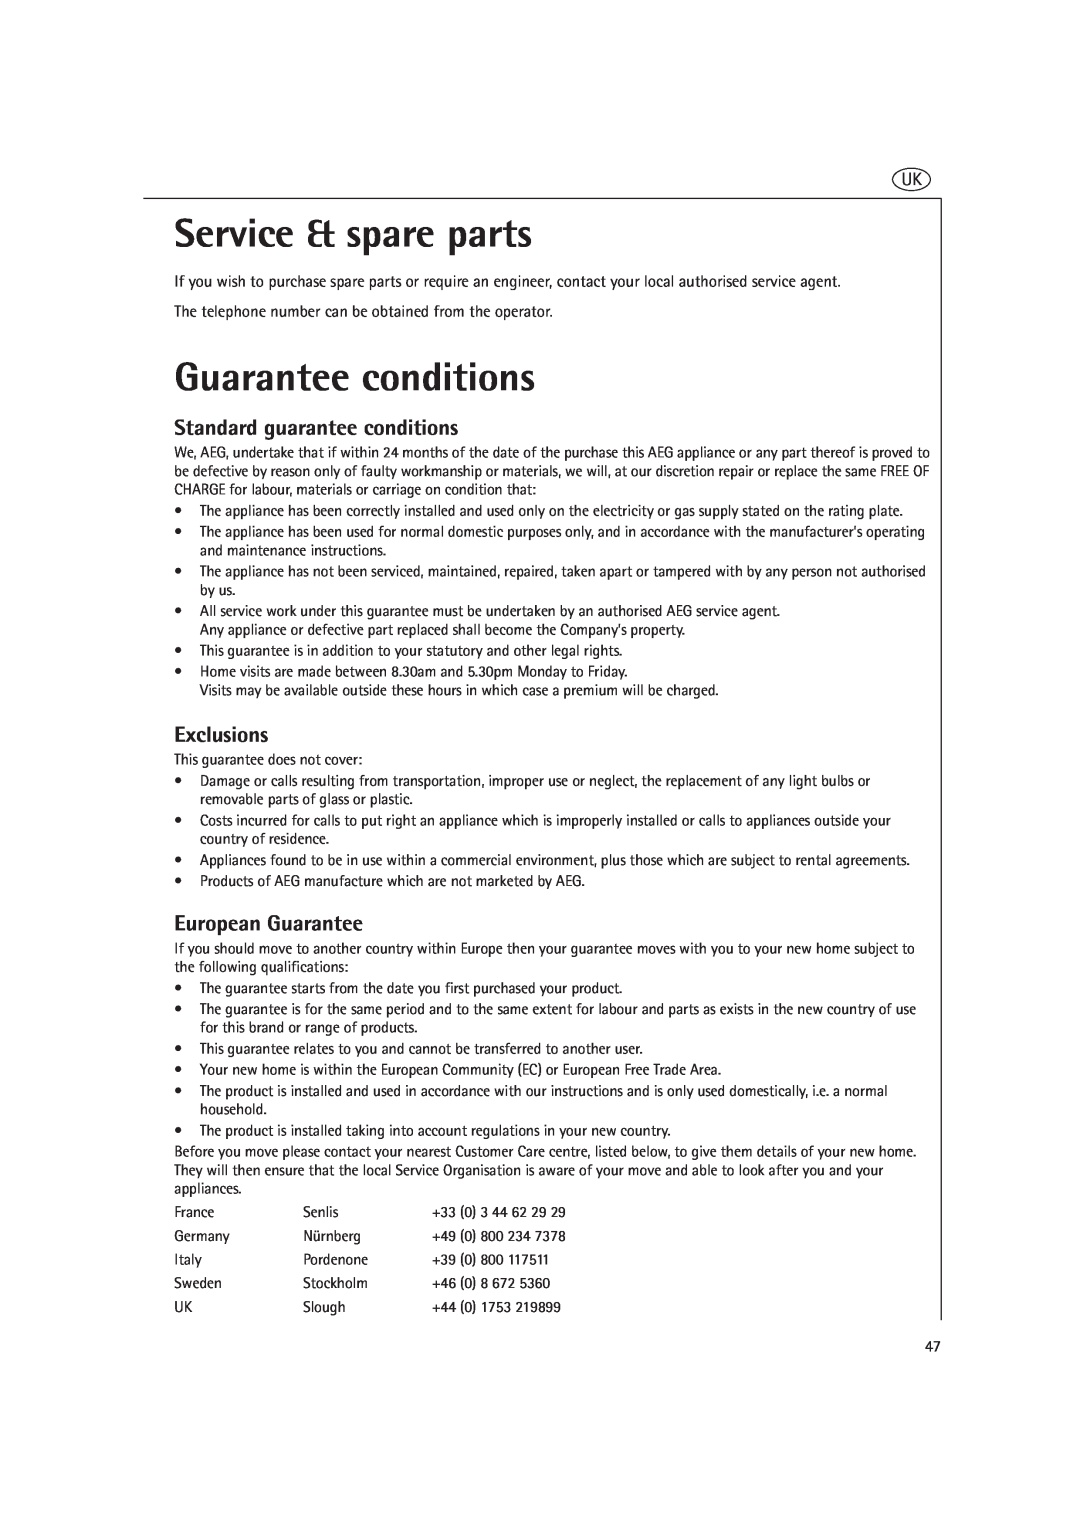 AEG MCD2660E Service & spare parts, Guarantee conditions, Standard guarantee conditions, Exclusions, European Guarantee 